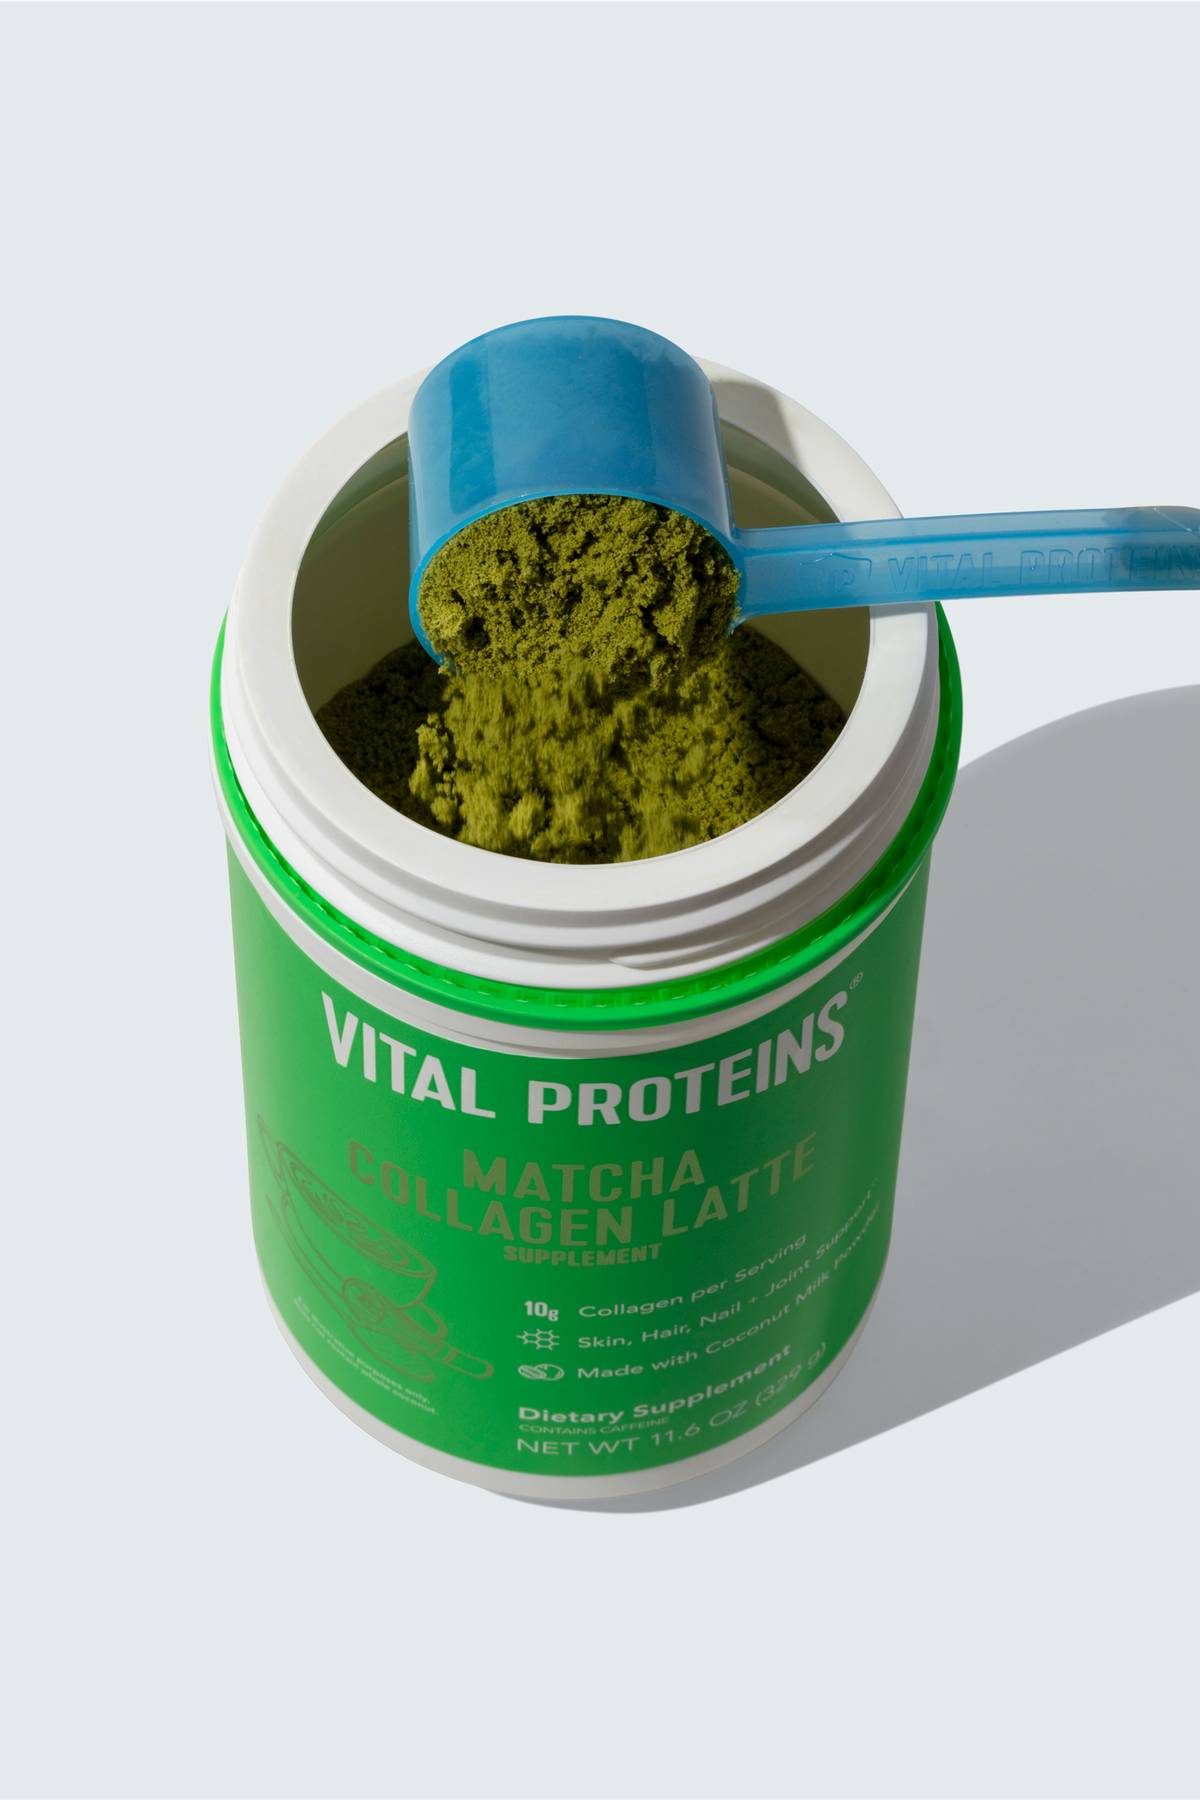 Vital Proteins Matcha Collagen Peptides Powder Supplement, L